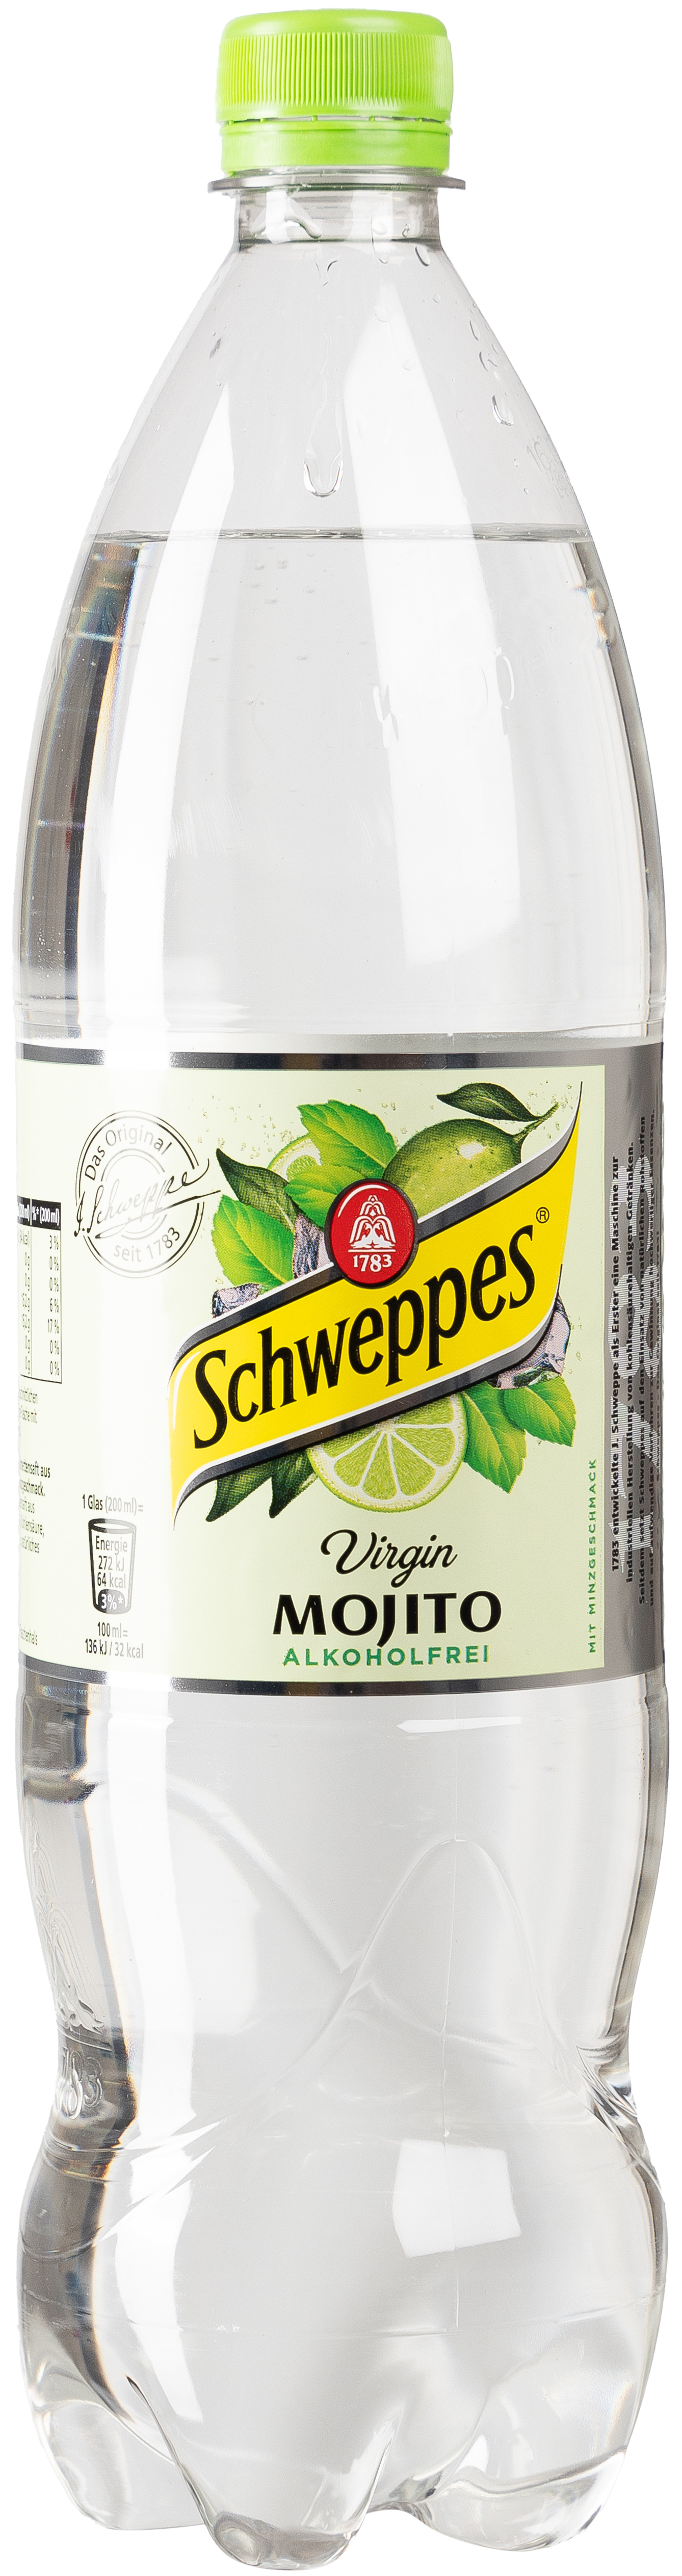 Schweppes Virgin Mojito 1,25L EINWEG